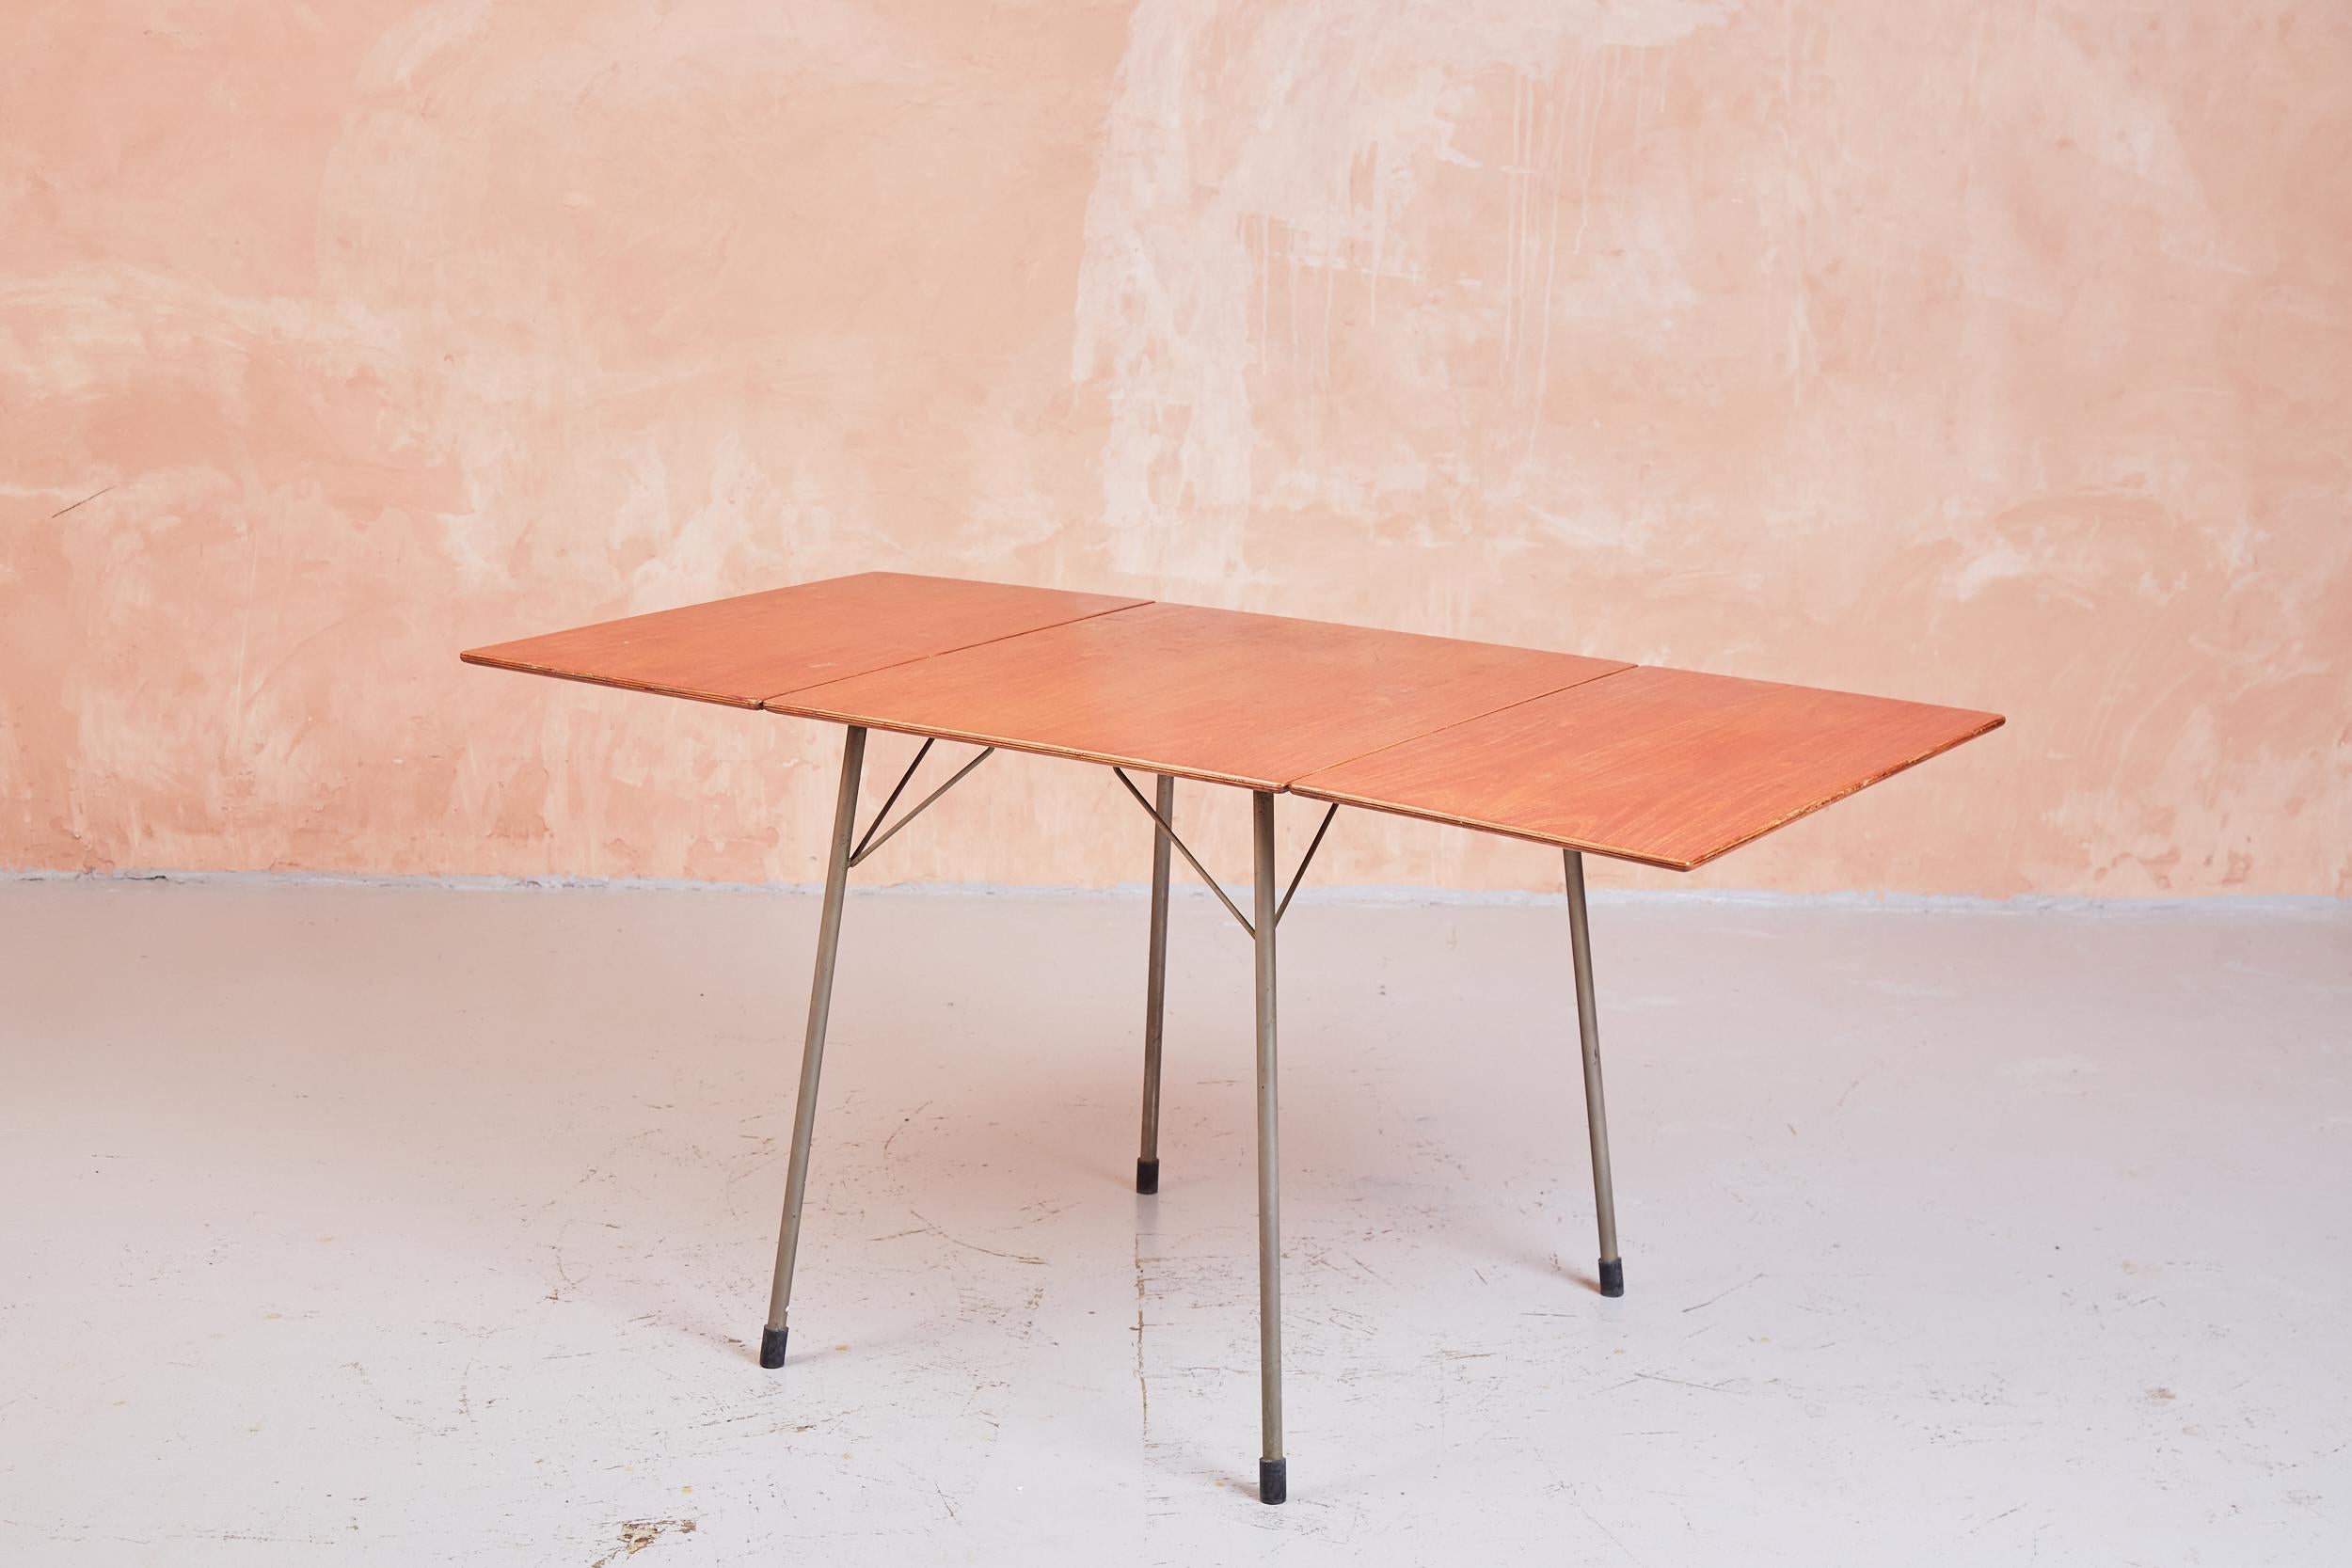 Der Tisch 3601 gehört zu den eher zweckmäßigen Entwürfen von Arne Jacobsen aus den 1950er Jahren. Er steht auf Aluminiumbeinen mit Gummizwingen und hat eine Platte aus teakfurniertem Sperrholz. Ein schlichtes, fast industrielles Design, das Eleganz